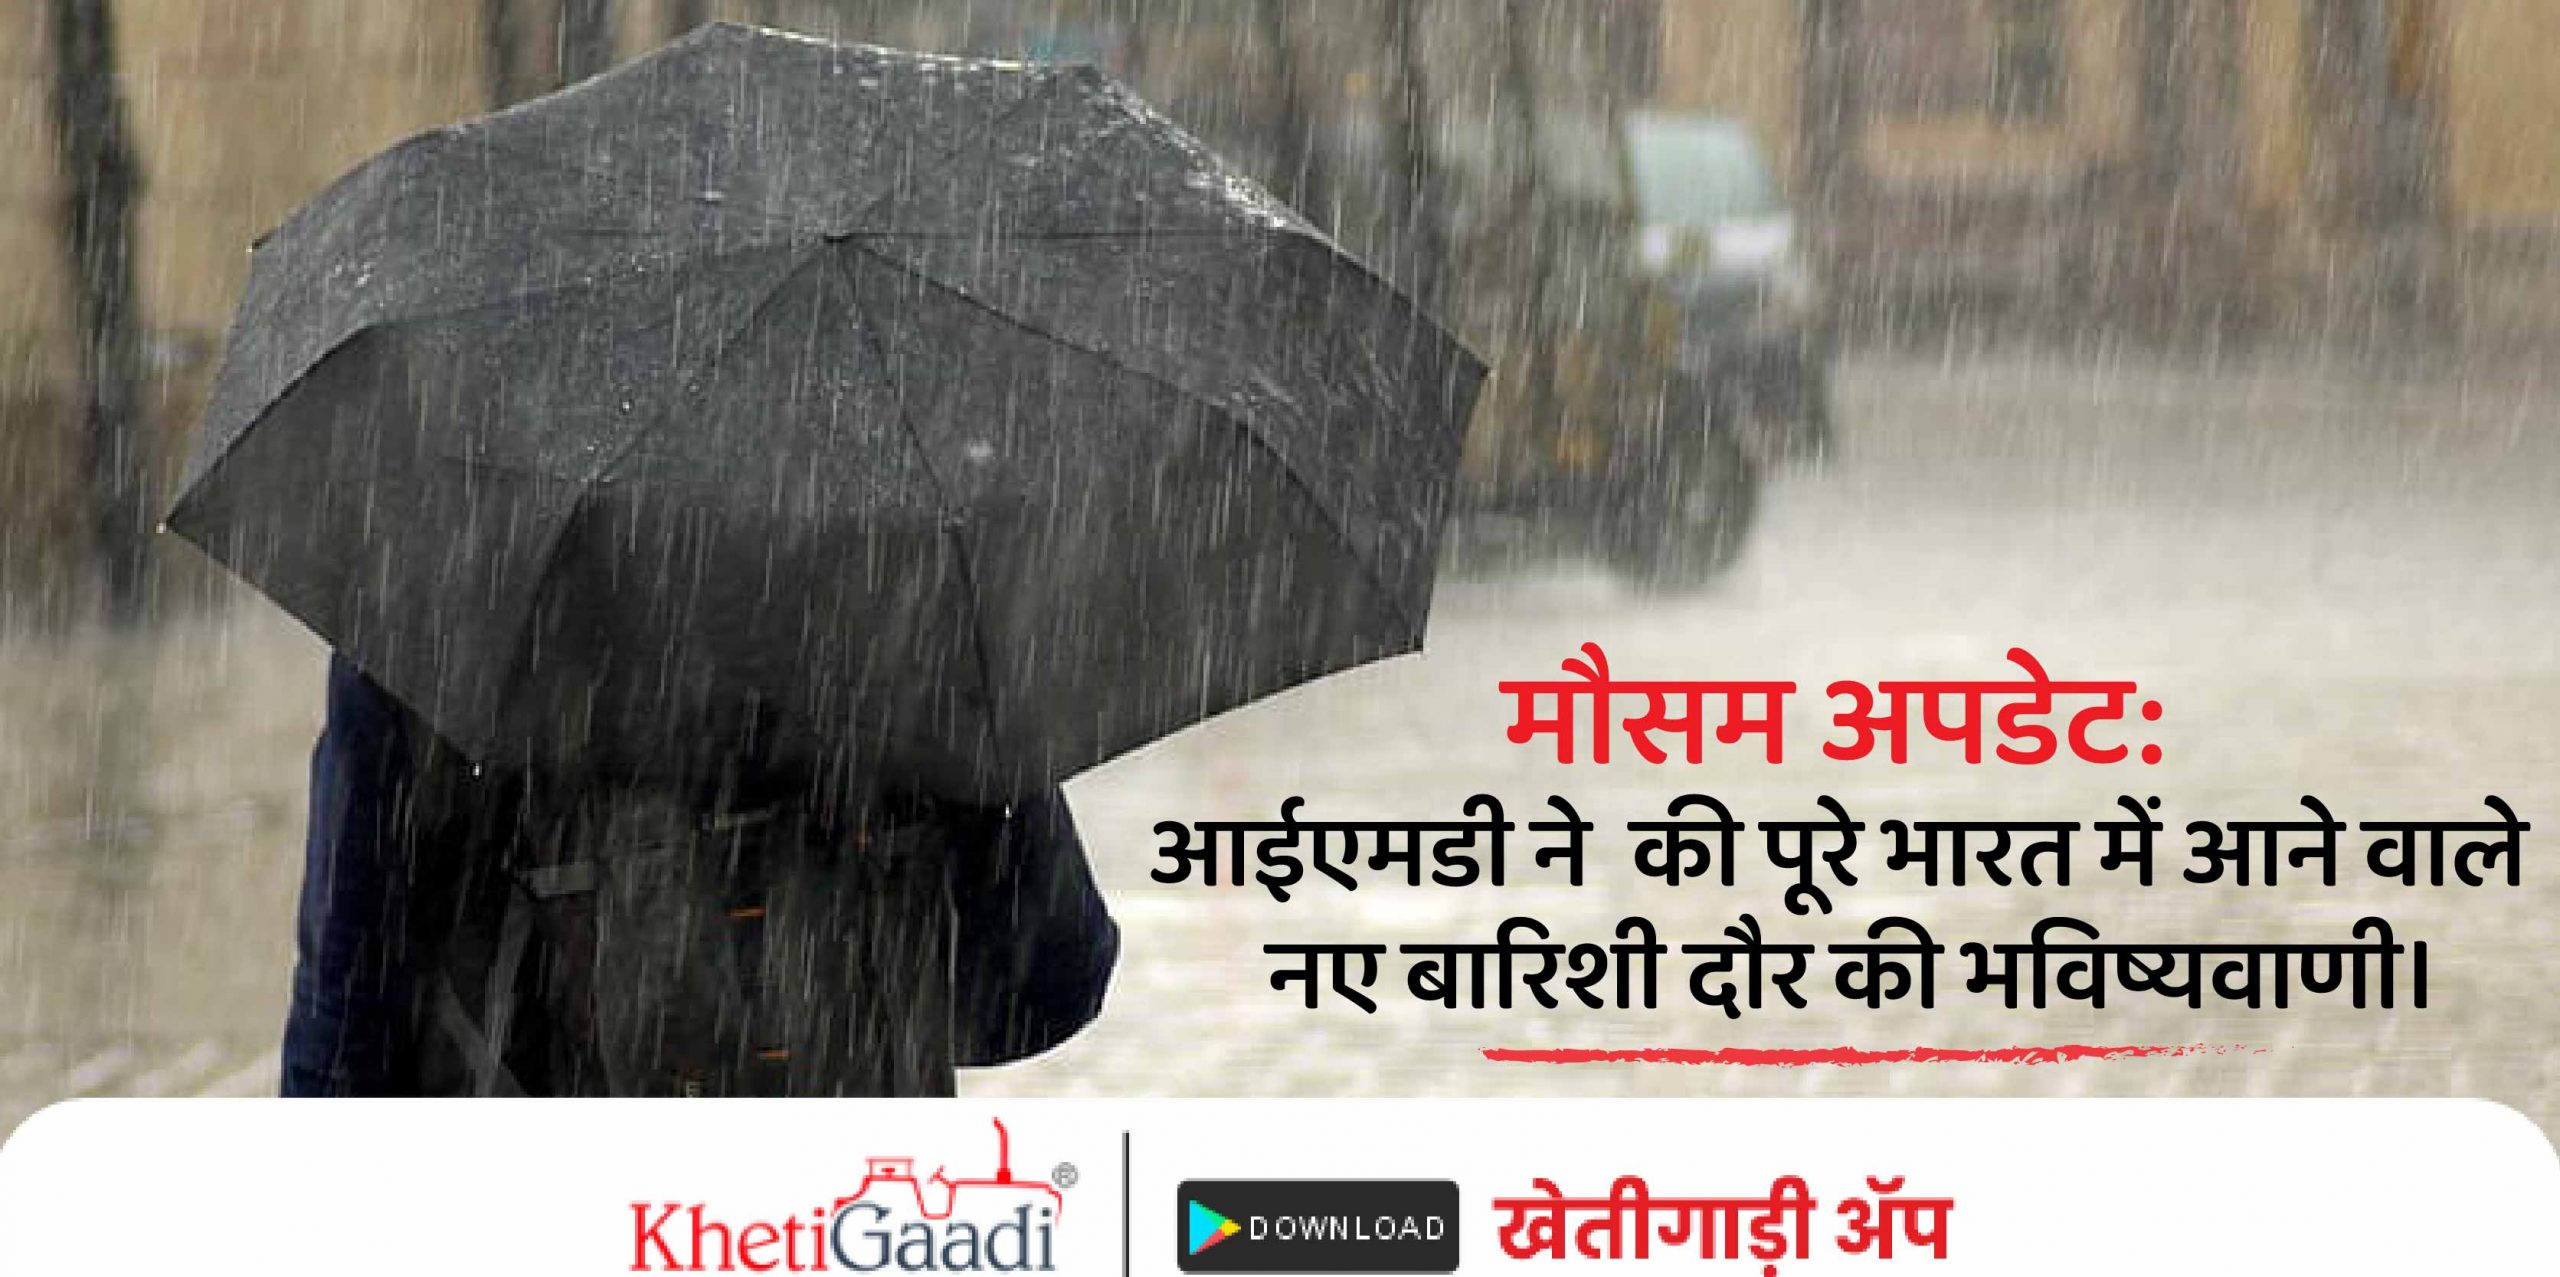 मौसम अपडेट(Weather Update): आईएमडी (IMD) ने की पूरे भारत में आने वाले नए बारिशी दौर की भविष्यवाणी।